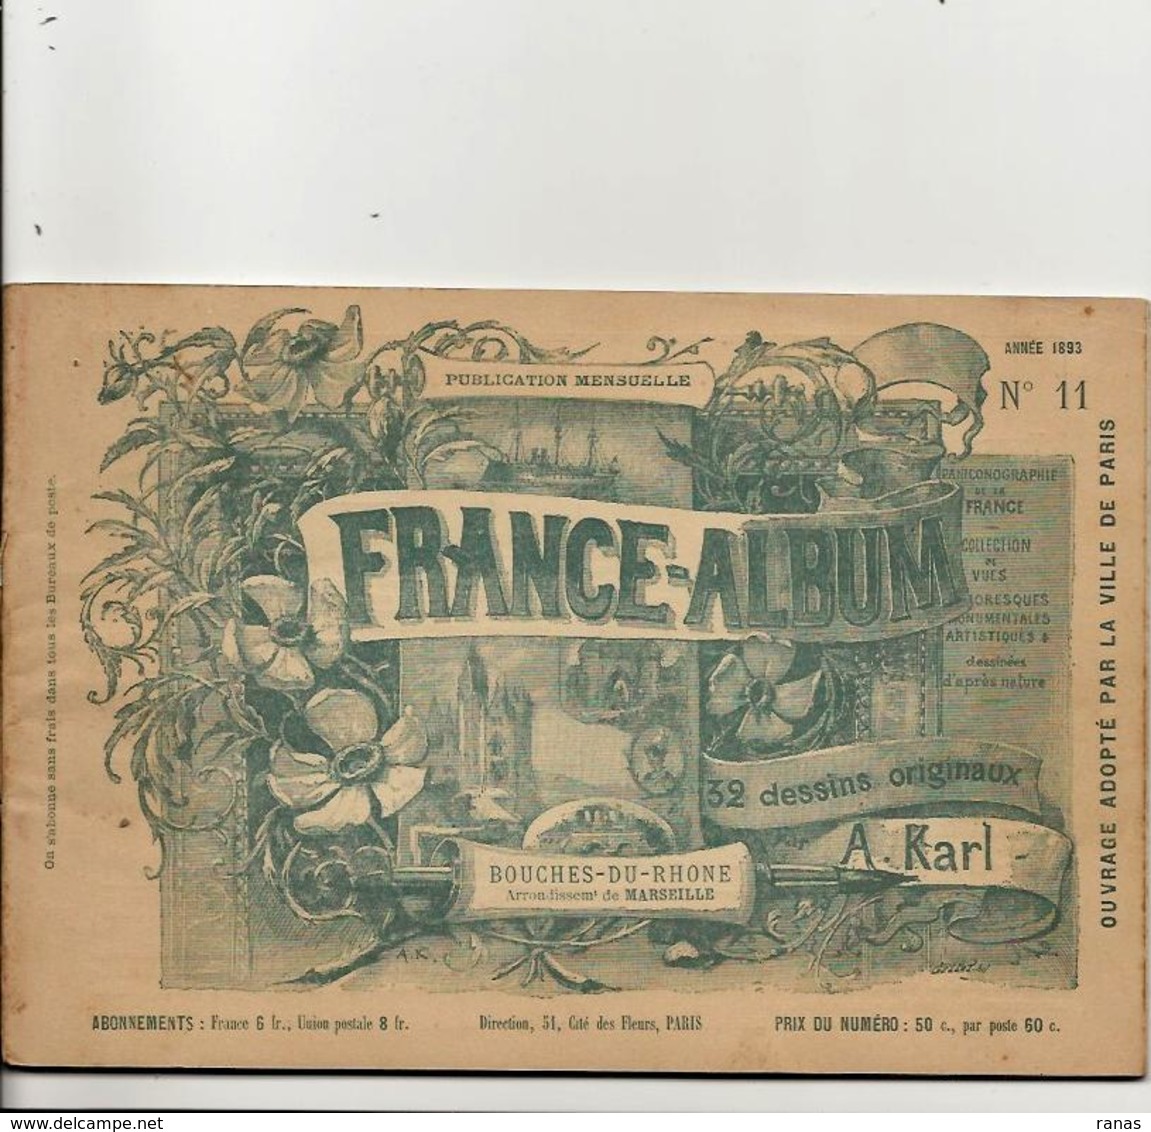 Bouches Du Rhône 13 France Album De A. KARL, Carte Gravures Texte Publicités 1893 - Dépliants Touristiques